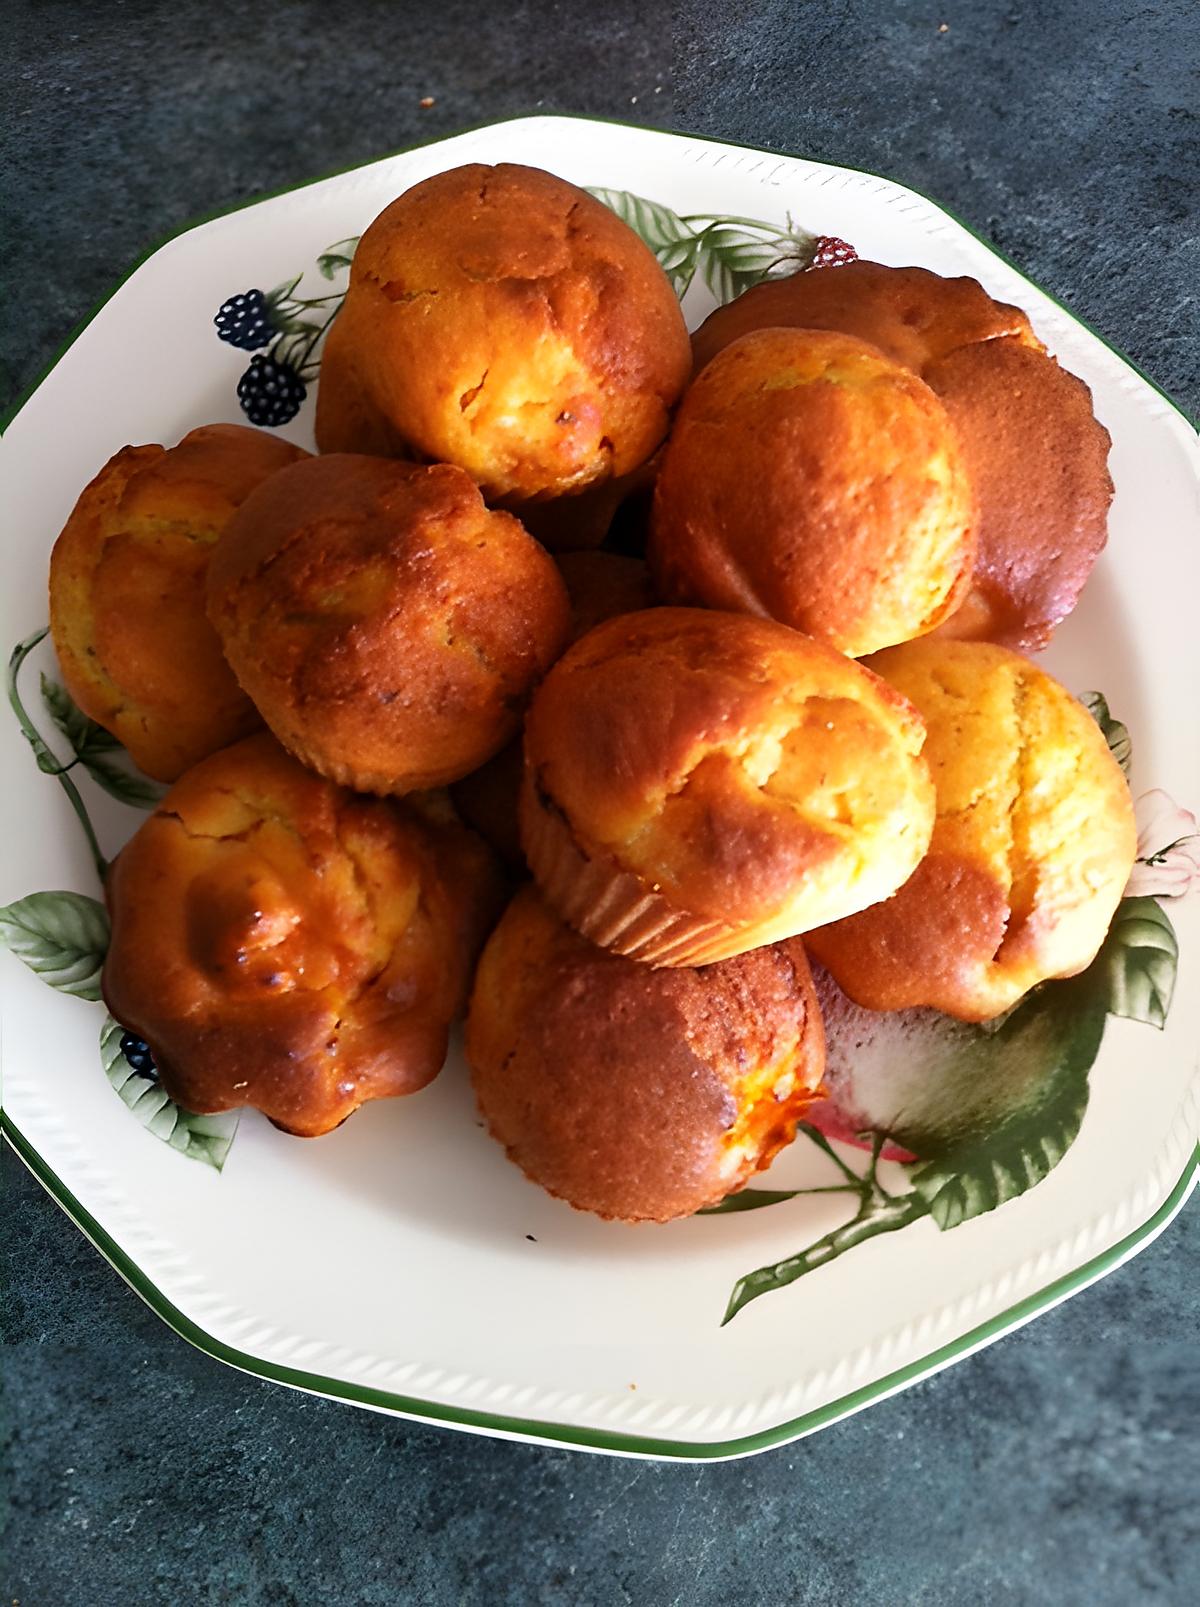 recette Muffins aux abricots et amandes